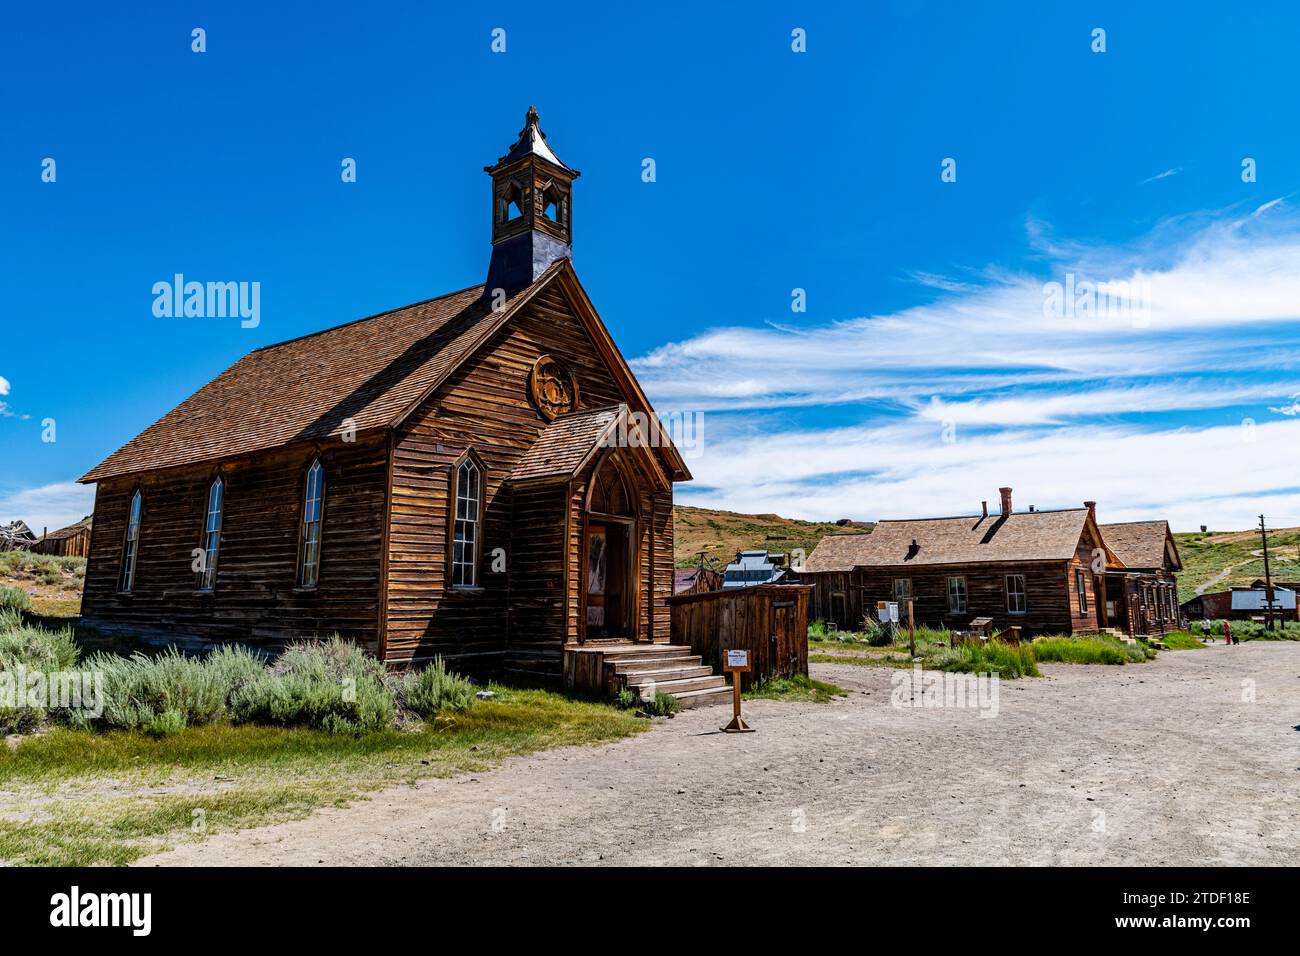 Ville fantôme de Bodie, Sierra Nevada, Californie, États-Unis d'Amérique, Amérique du Nord Banque D'Images